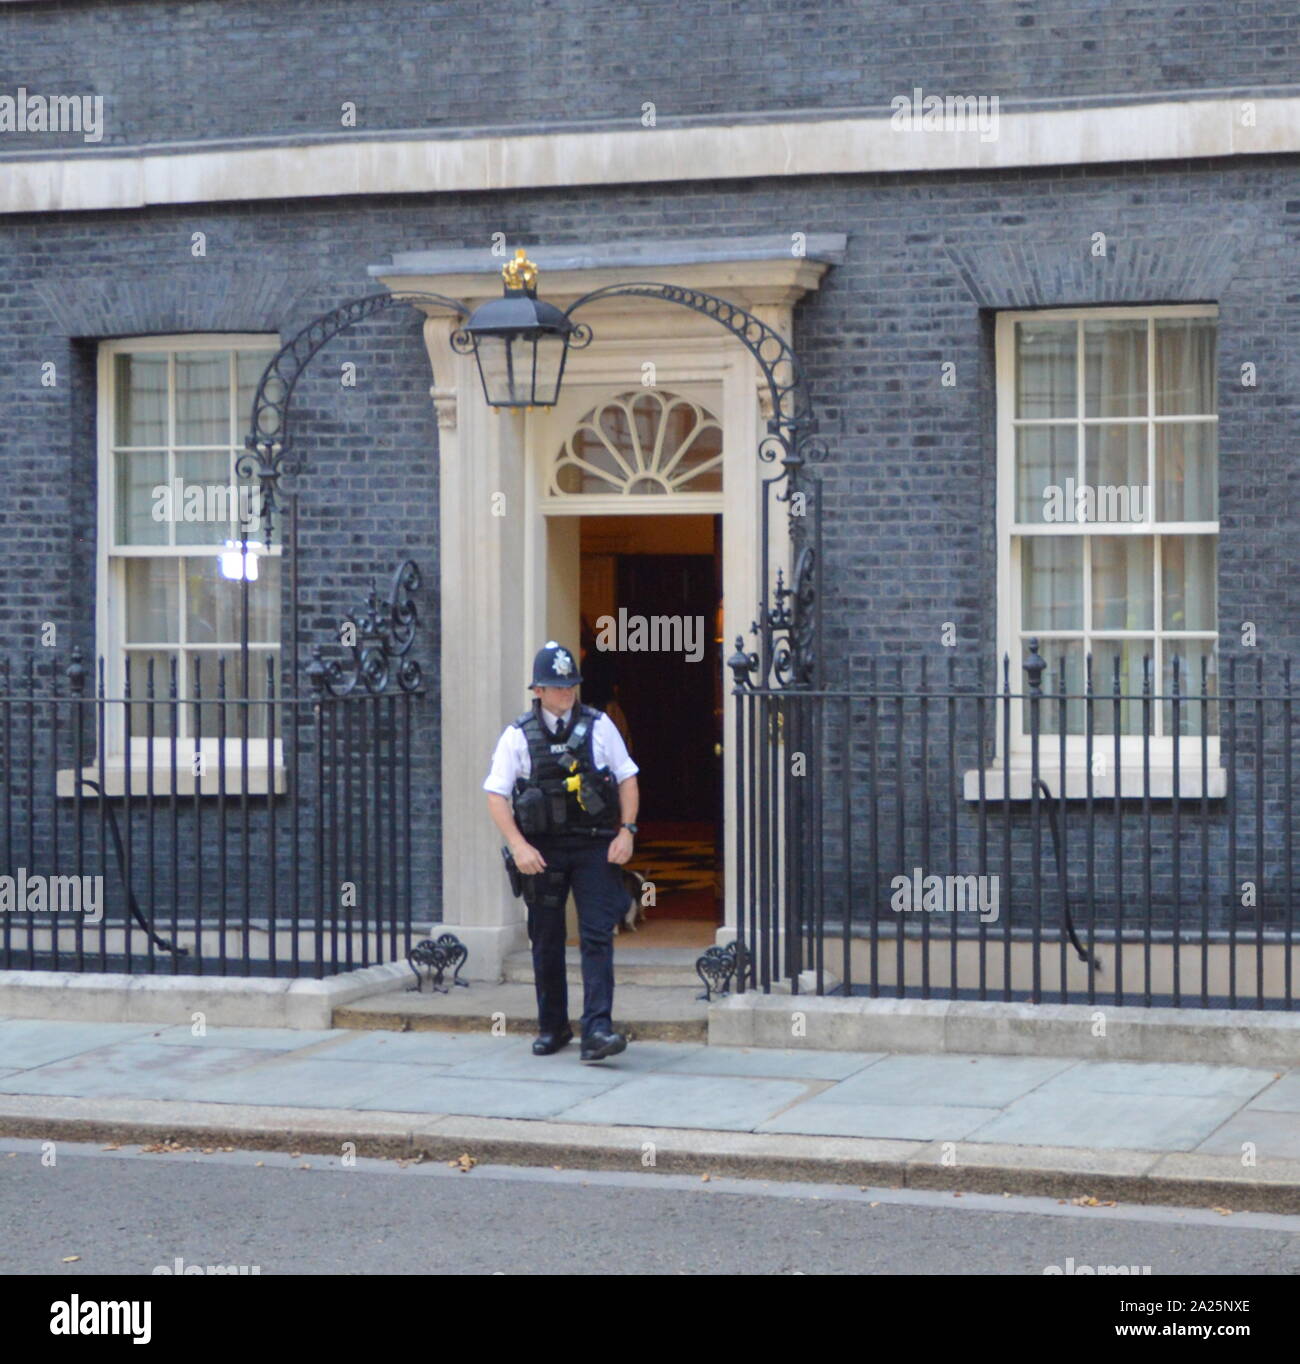 Larry il 10 Downing street cat e chief mouser al cabinet office.presso la porta del numero dieci di Downing street office e la residenza del Primo ministro britannico Foto Stock